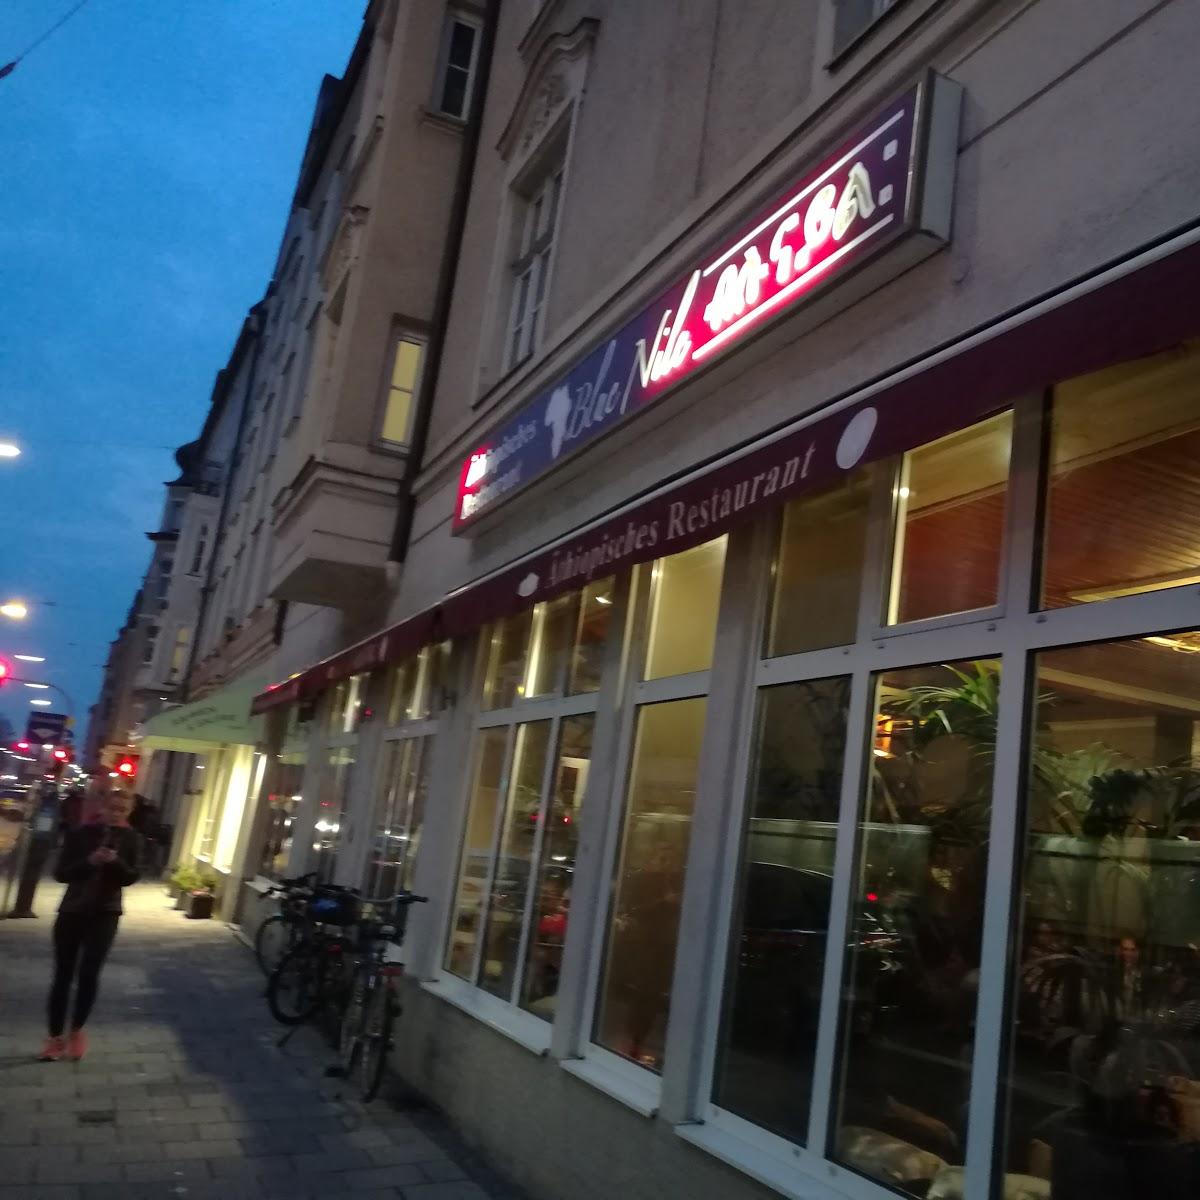 Restaurant "Blue Nile" in München